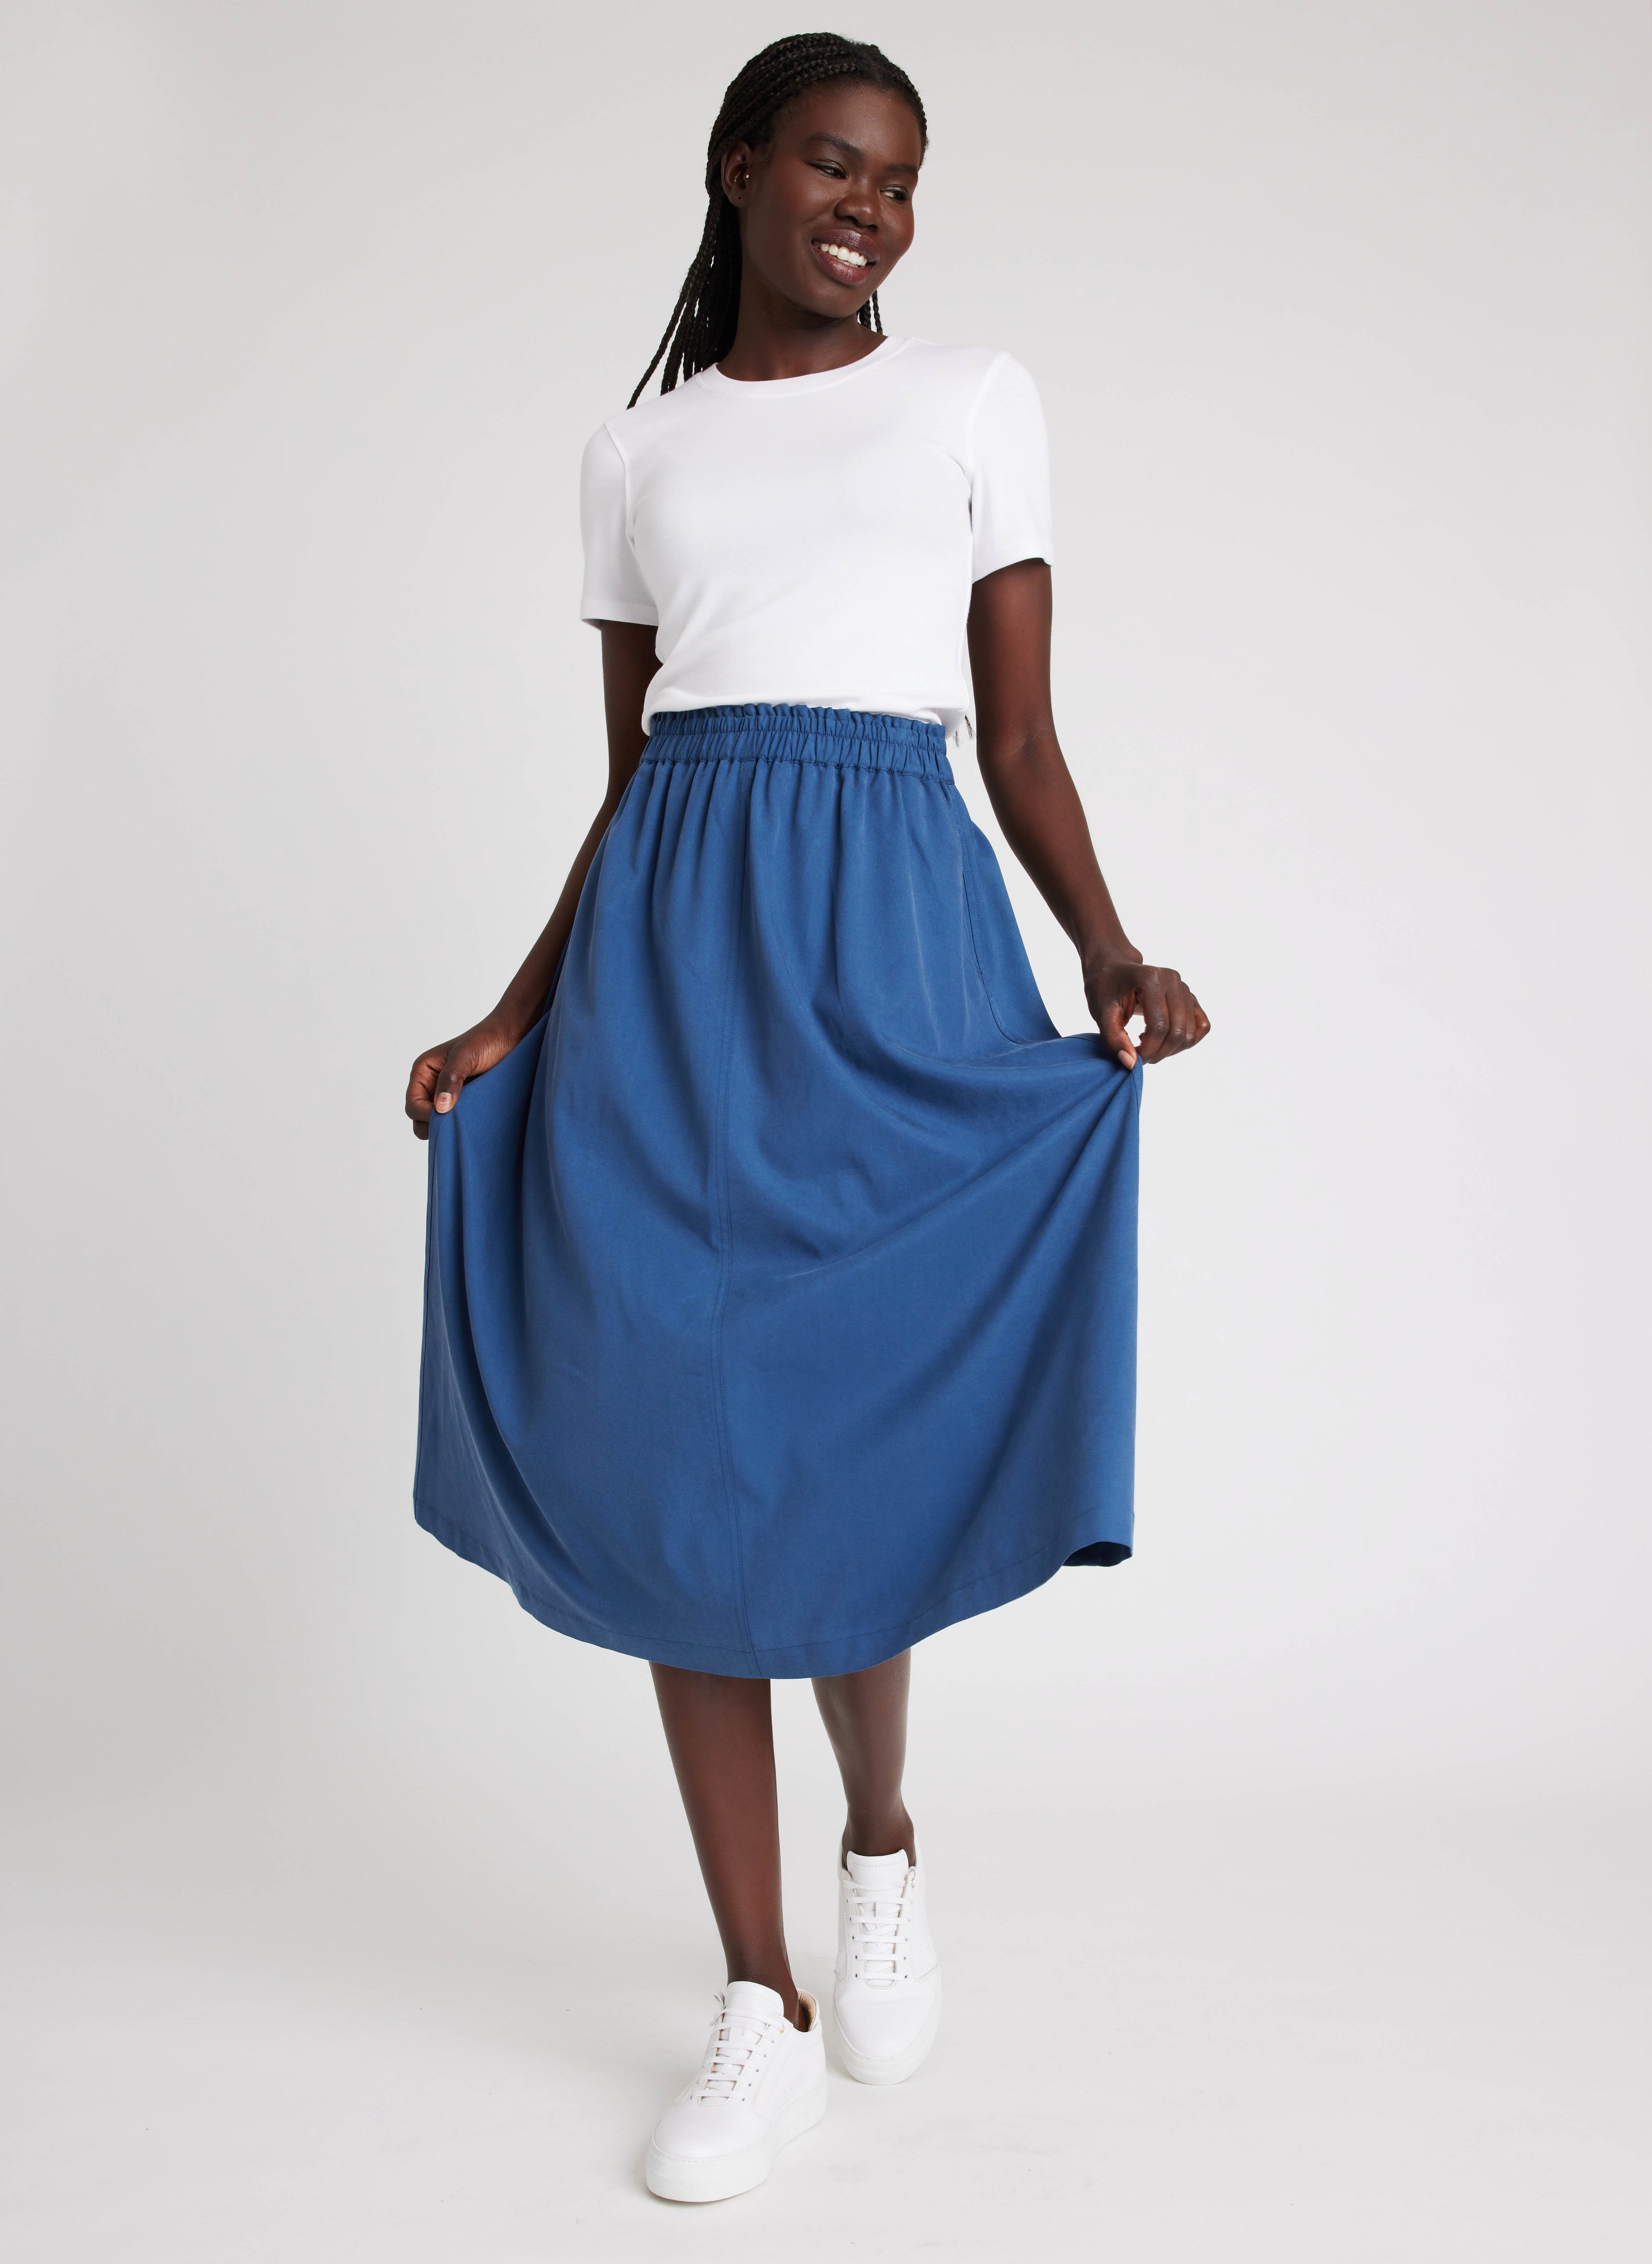 Midi A-line Skirt / High Waist Skirt / A-line Skirt / Vintage Style Skirt /  Midi Skirt / Womens Skirts / Skirt for Women -  Canada